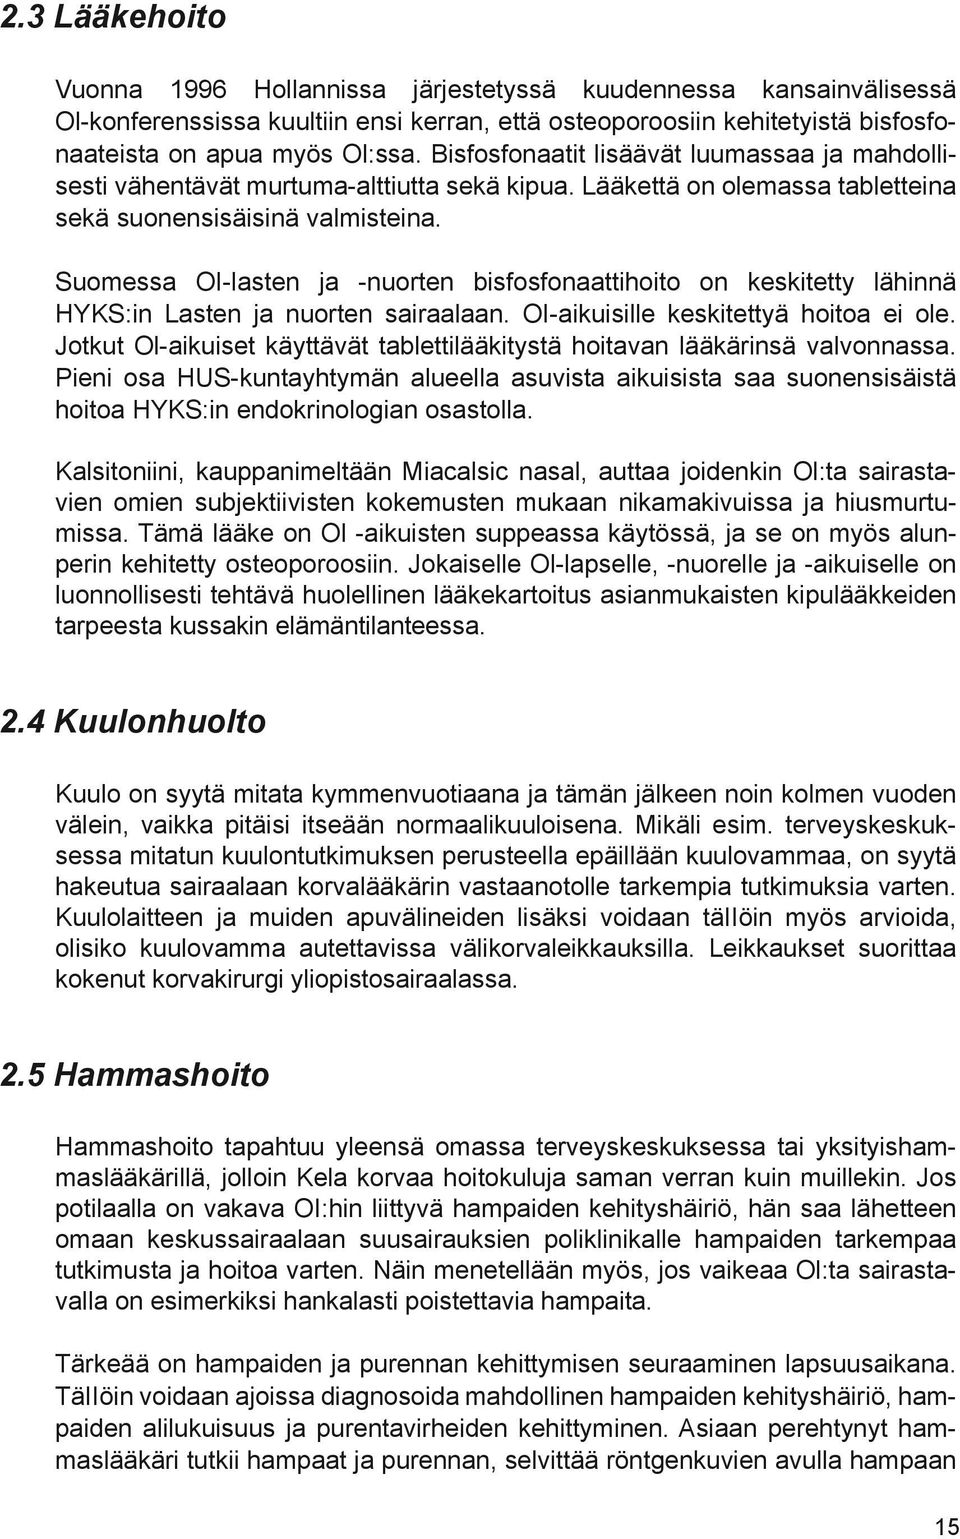 Suomessa OI-lasten ja -nuorten bisfosfonaattihoito on keskitetty lähinnä HYKS:in Lasten ja nuorten sairaalaan. OI-aikuisille keskitettyä hoitoa ei ole.